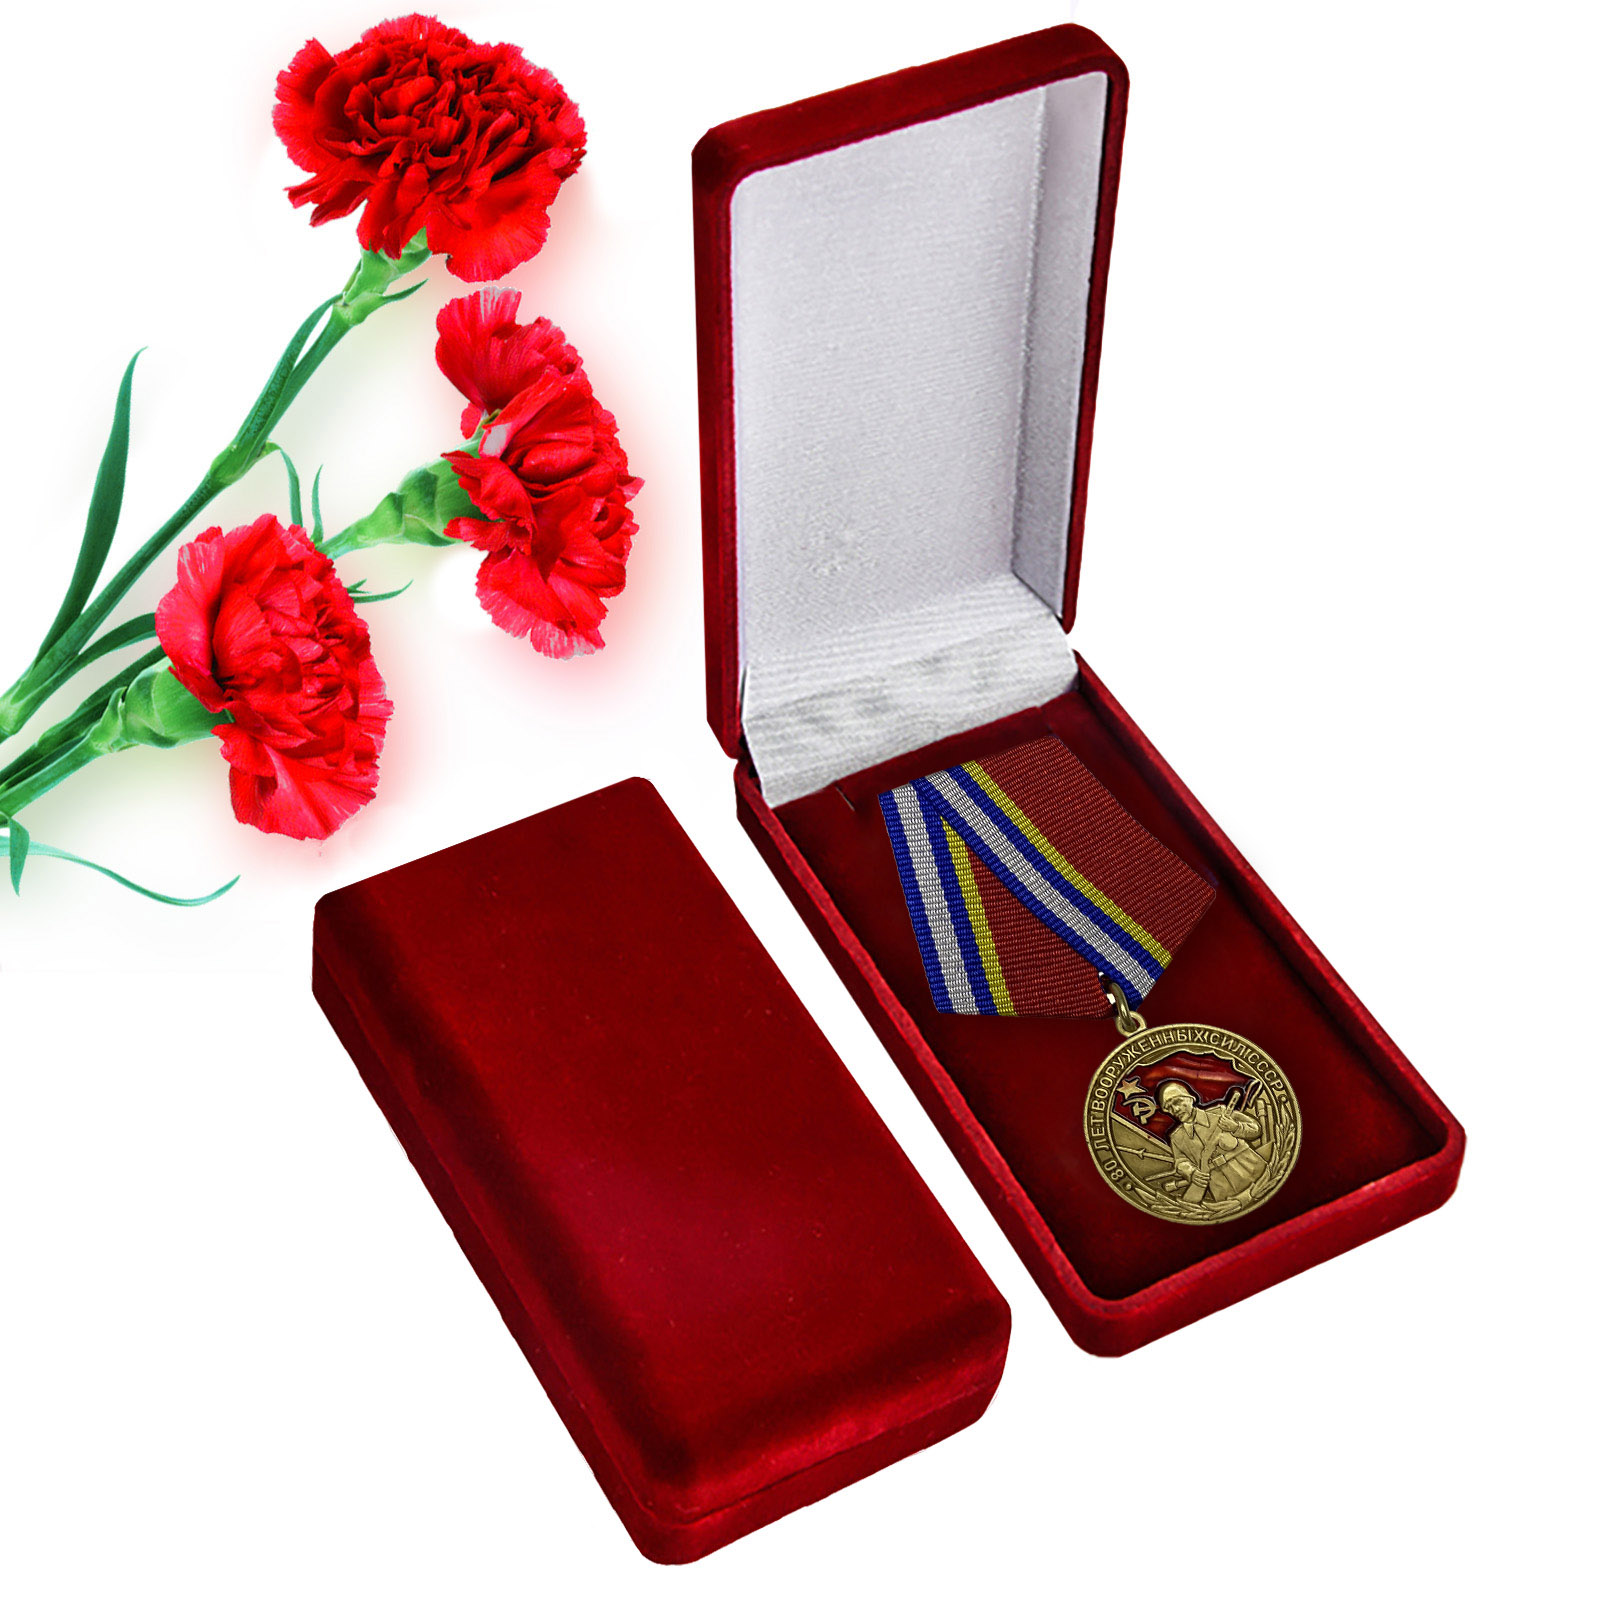 Медаль "80 лет ВС СССР" в футляре